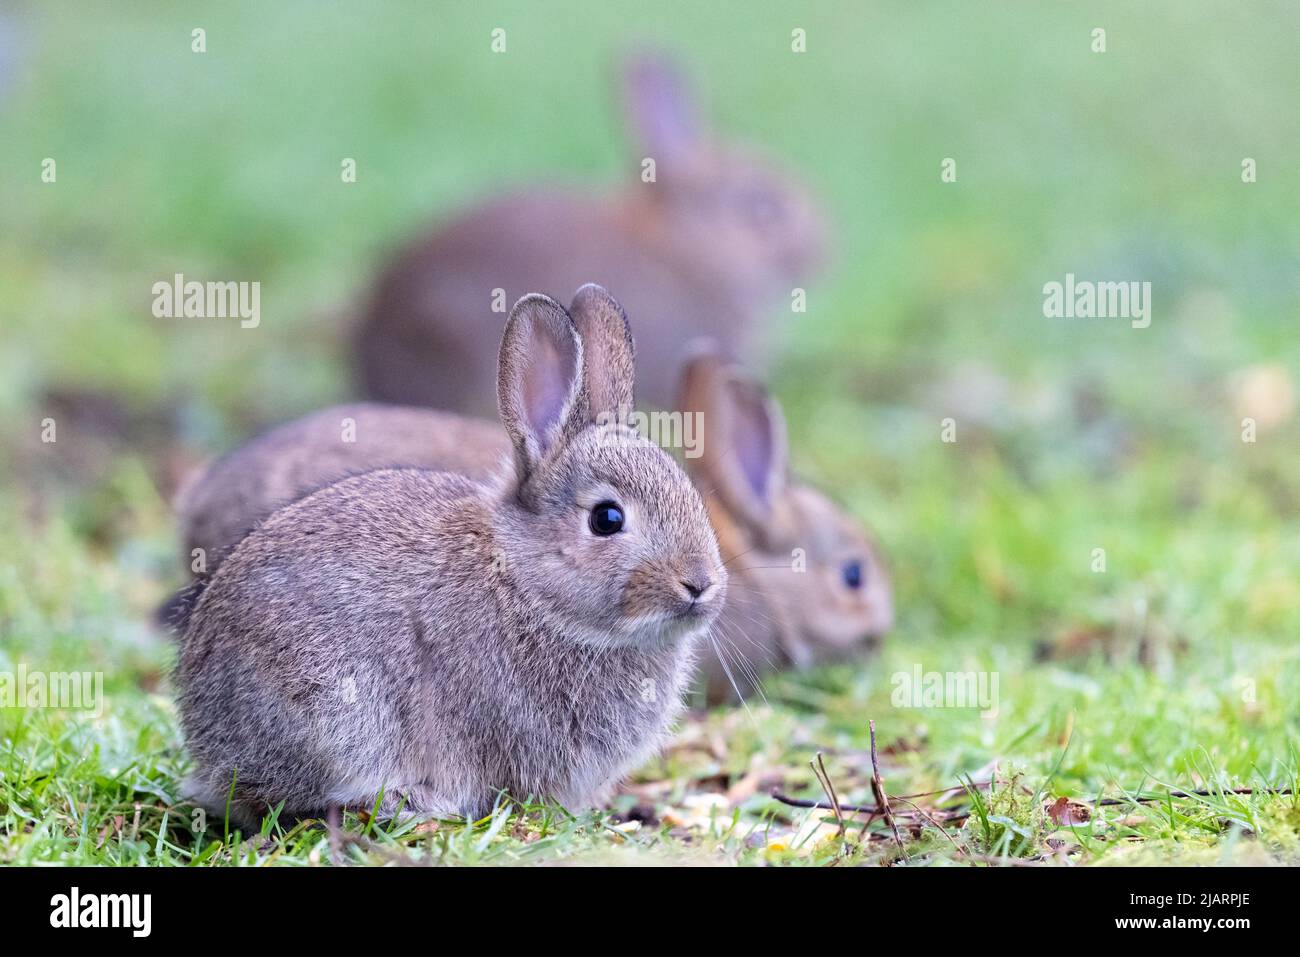 Jeunes lapins européens [ Oryctolagus cuniculus ] dans les prairies, Royaume-Uni Banque D'Images